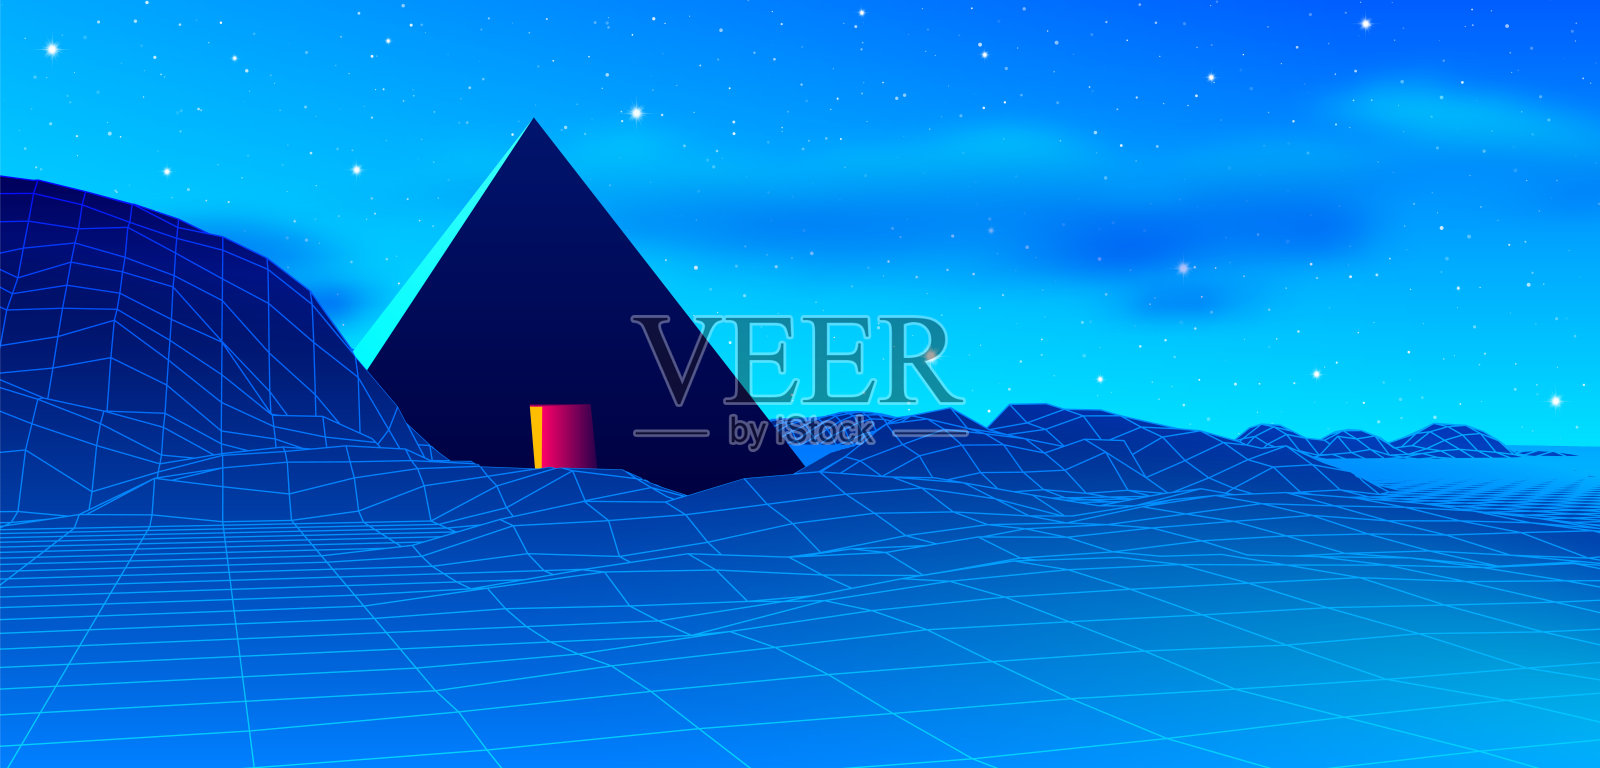 古老神秘的80年代金字塔风格霓虹灯景观与蓝天和山脉在retrowave, synthwave风格图形背景图片素材